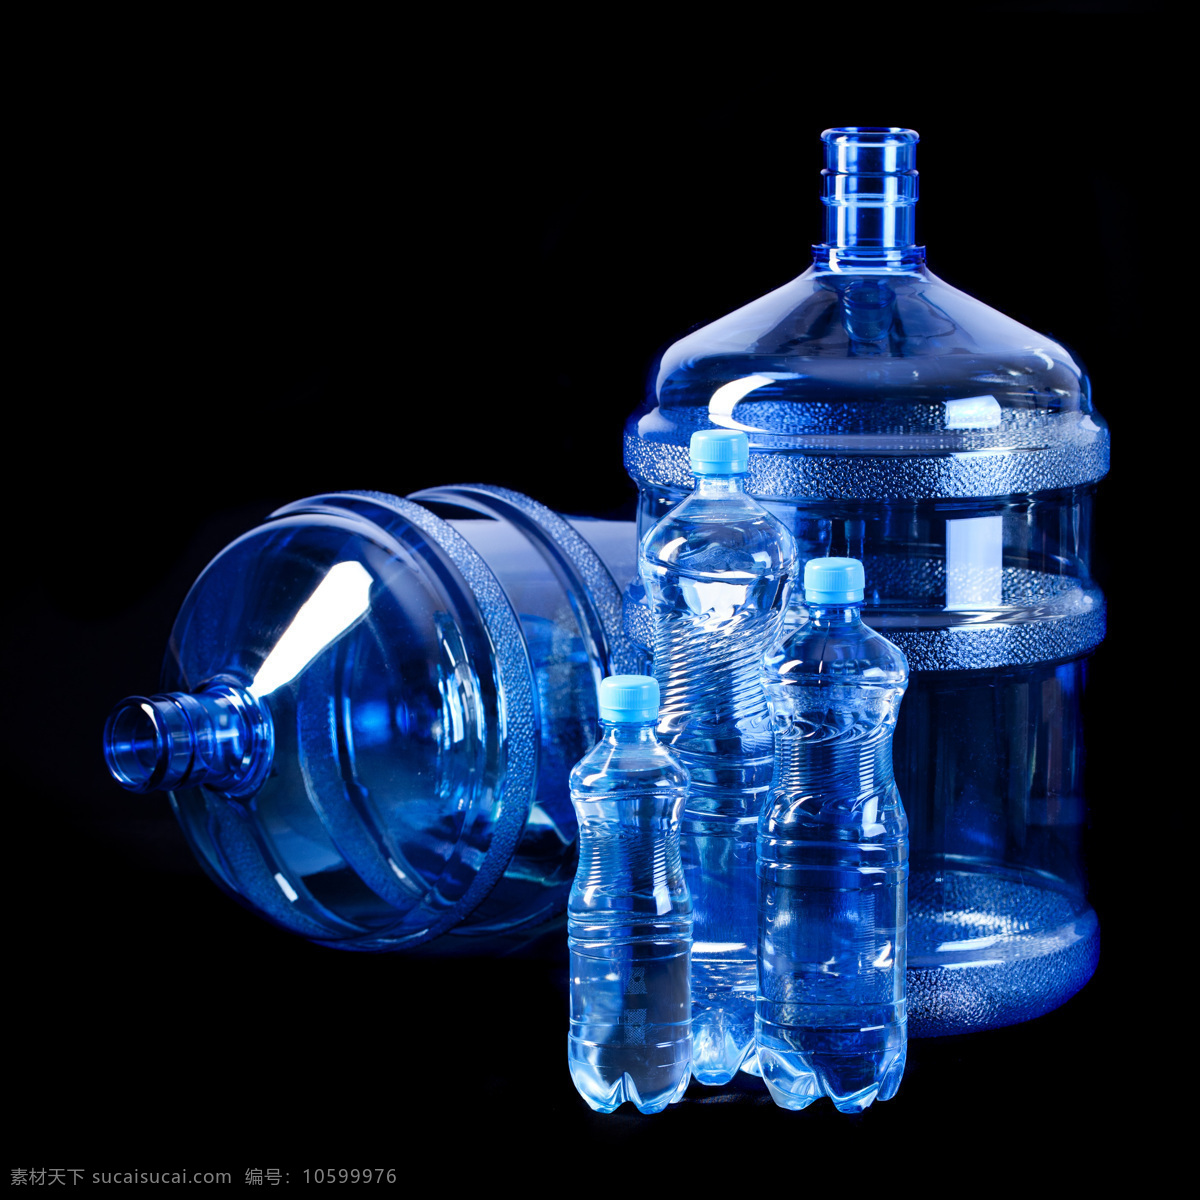 蓝色 塑料 矿泉水瓶 桶装 瓶装 矿泉水 瓶子 冰水烈火 生活百科 黑色